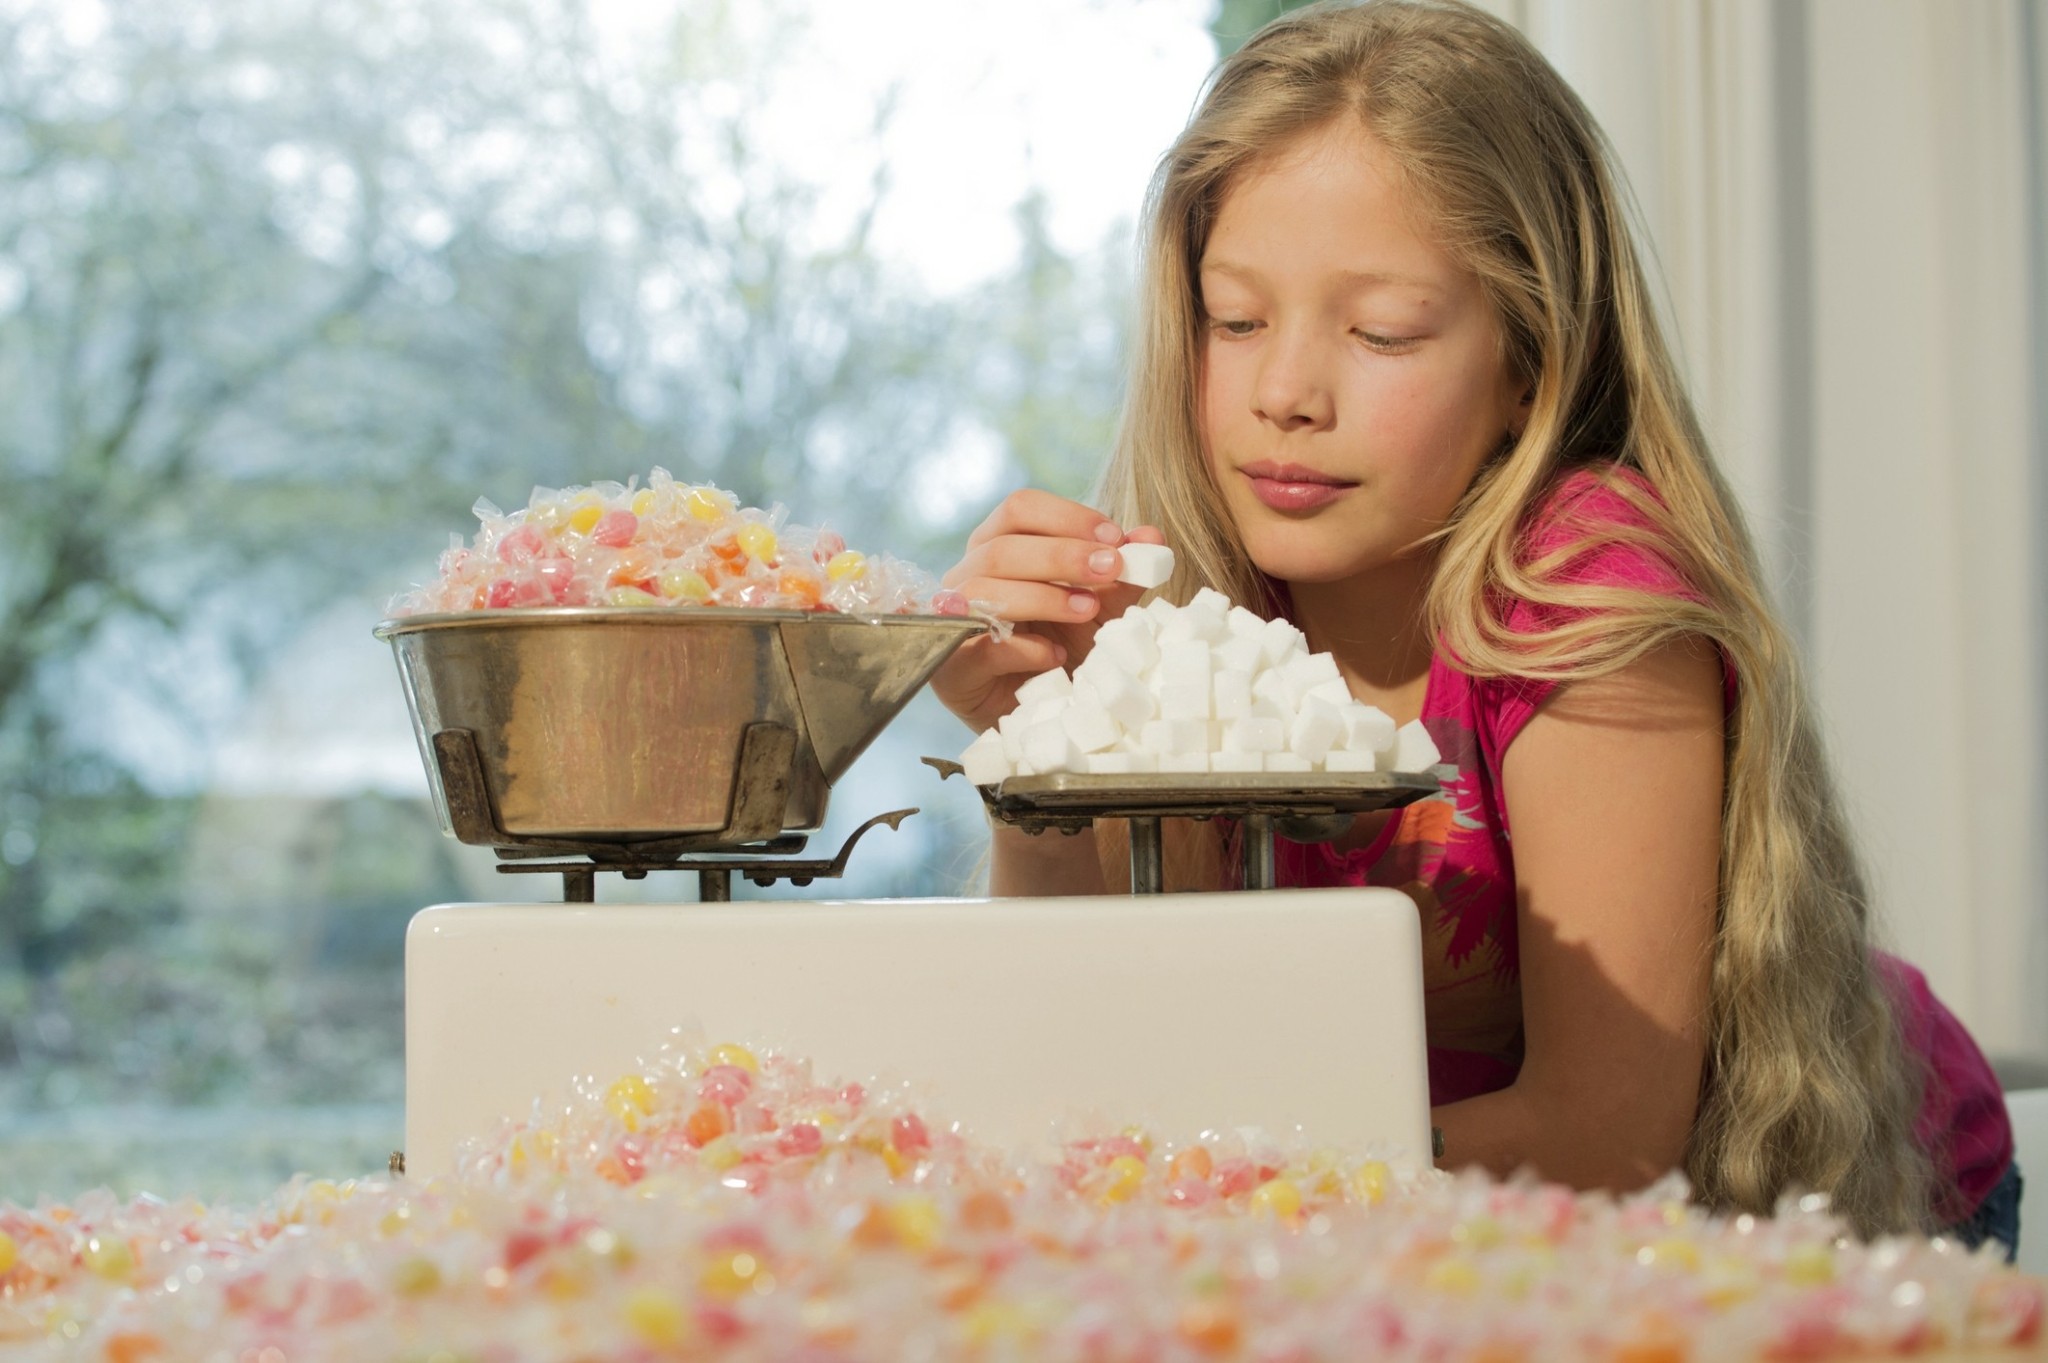 Προκαλεί η ζάχαρη υπερκινητικότητα στα παιδιά;